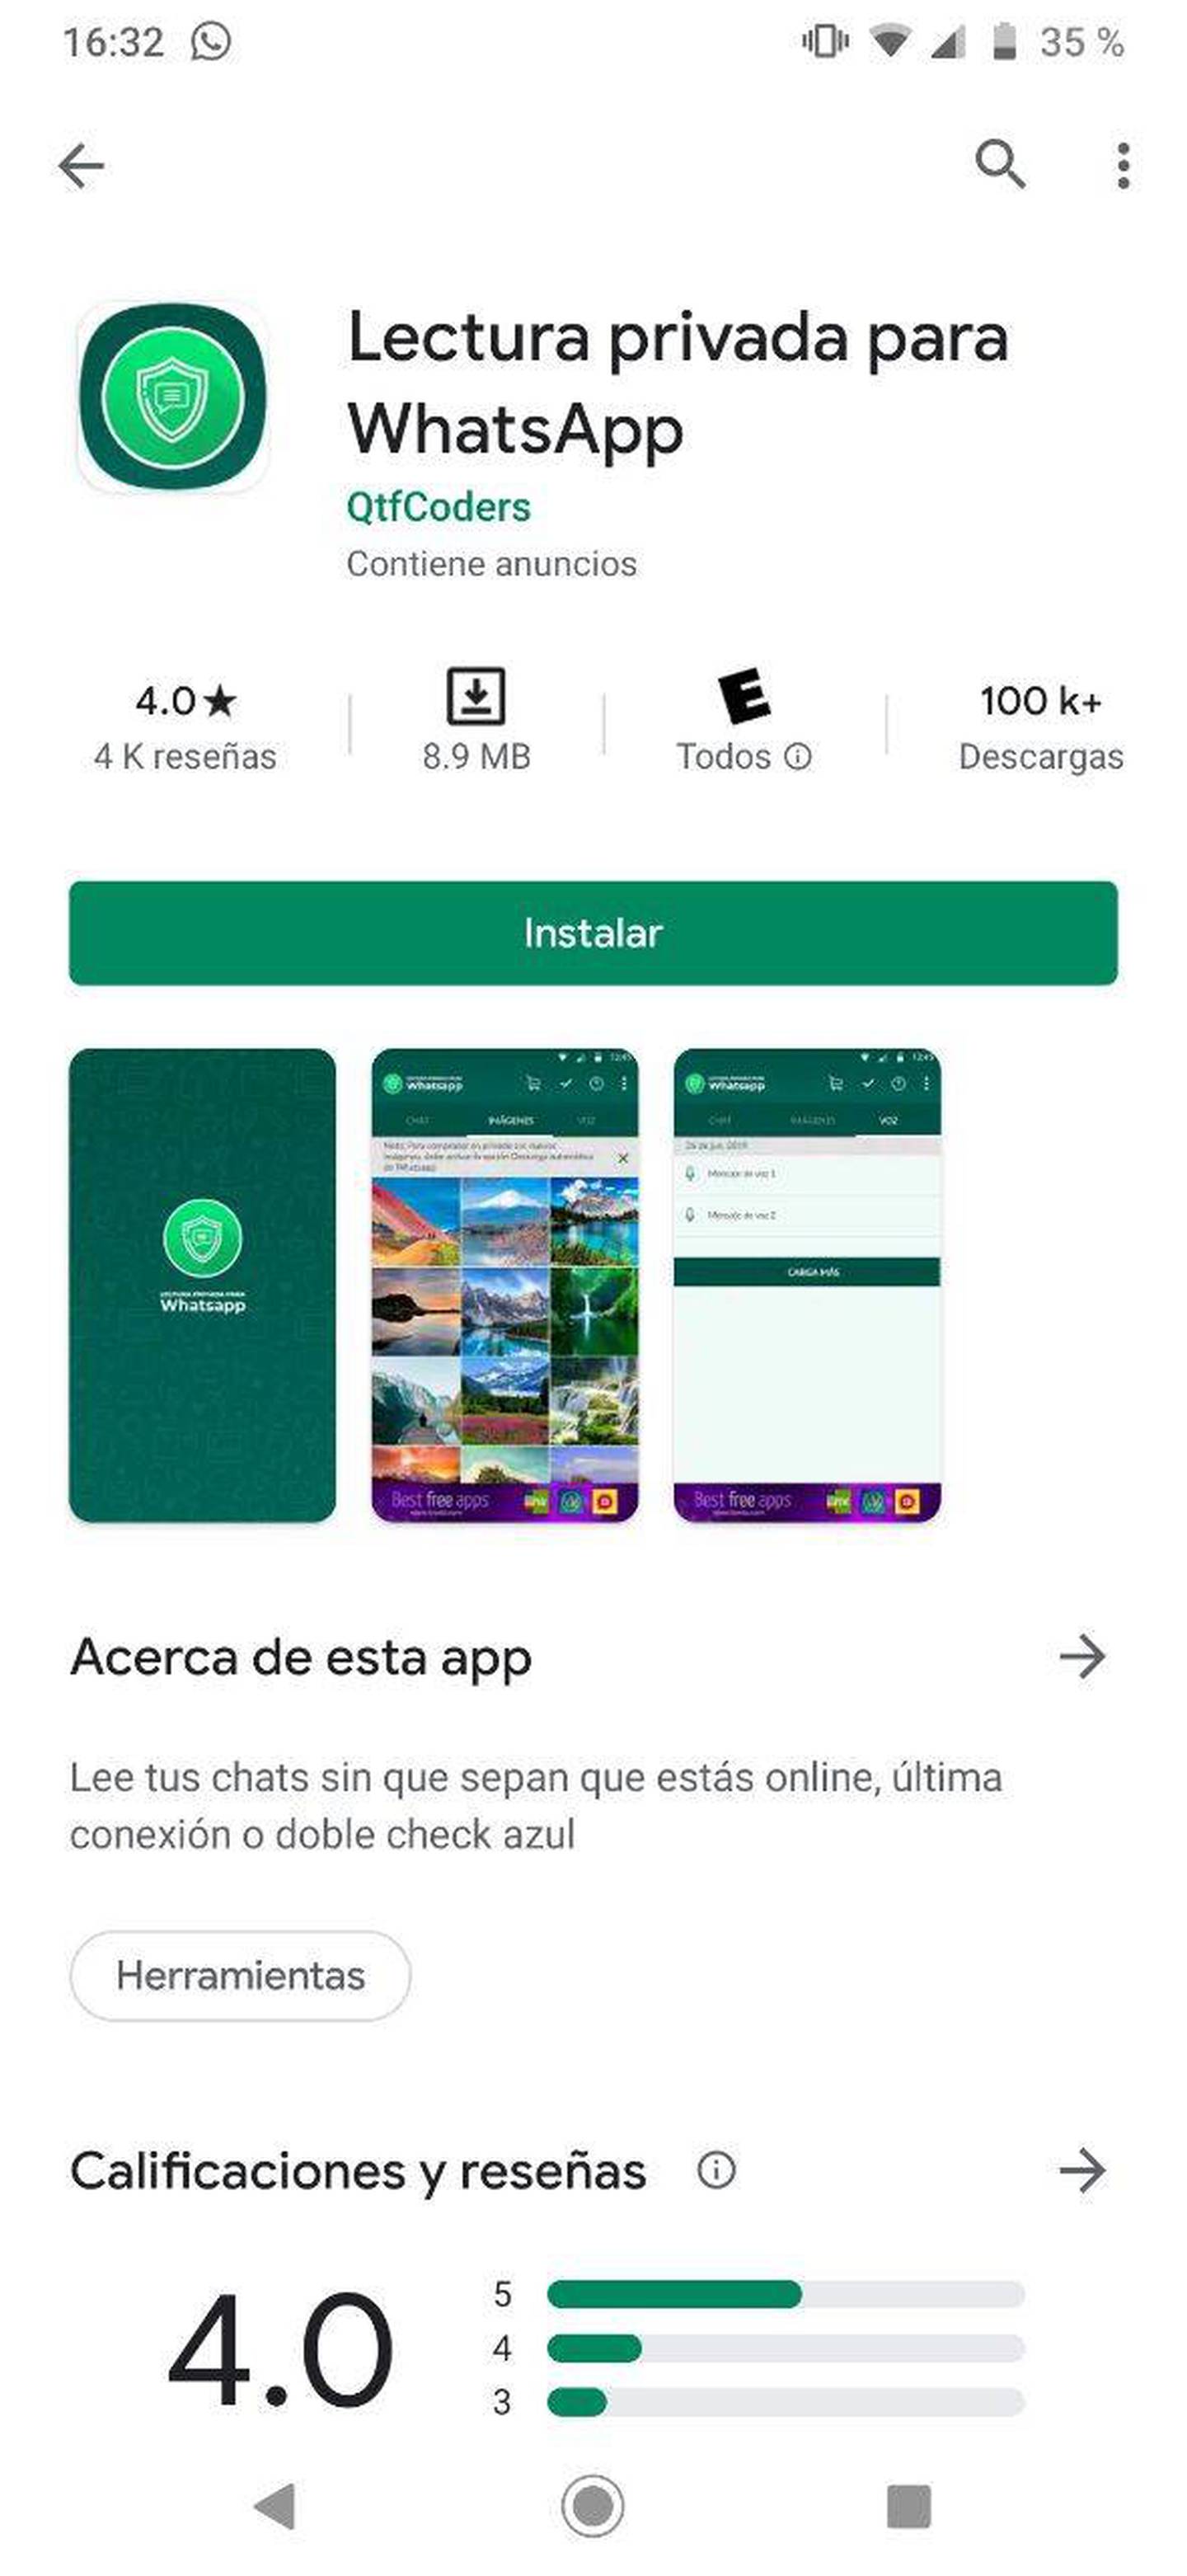 Whatsapp Cuatro Trucos Para Que Nadie Sepa Que Ya Leíste Los Mensajes 7454